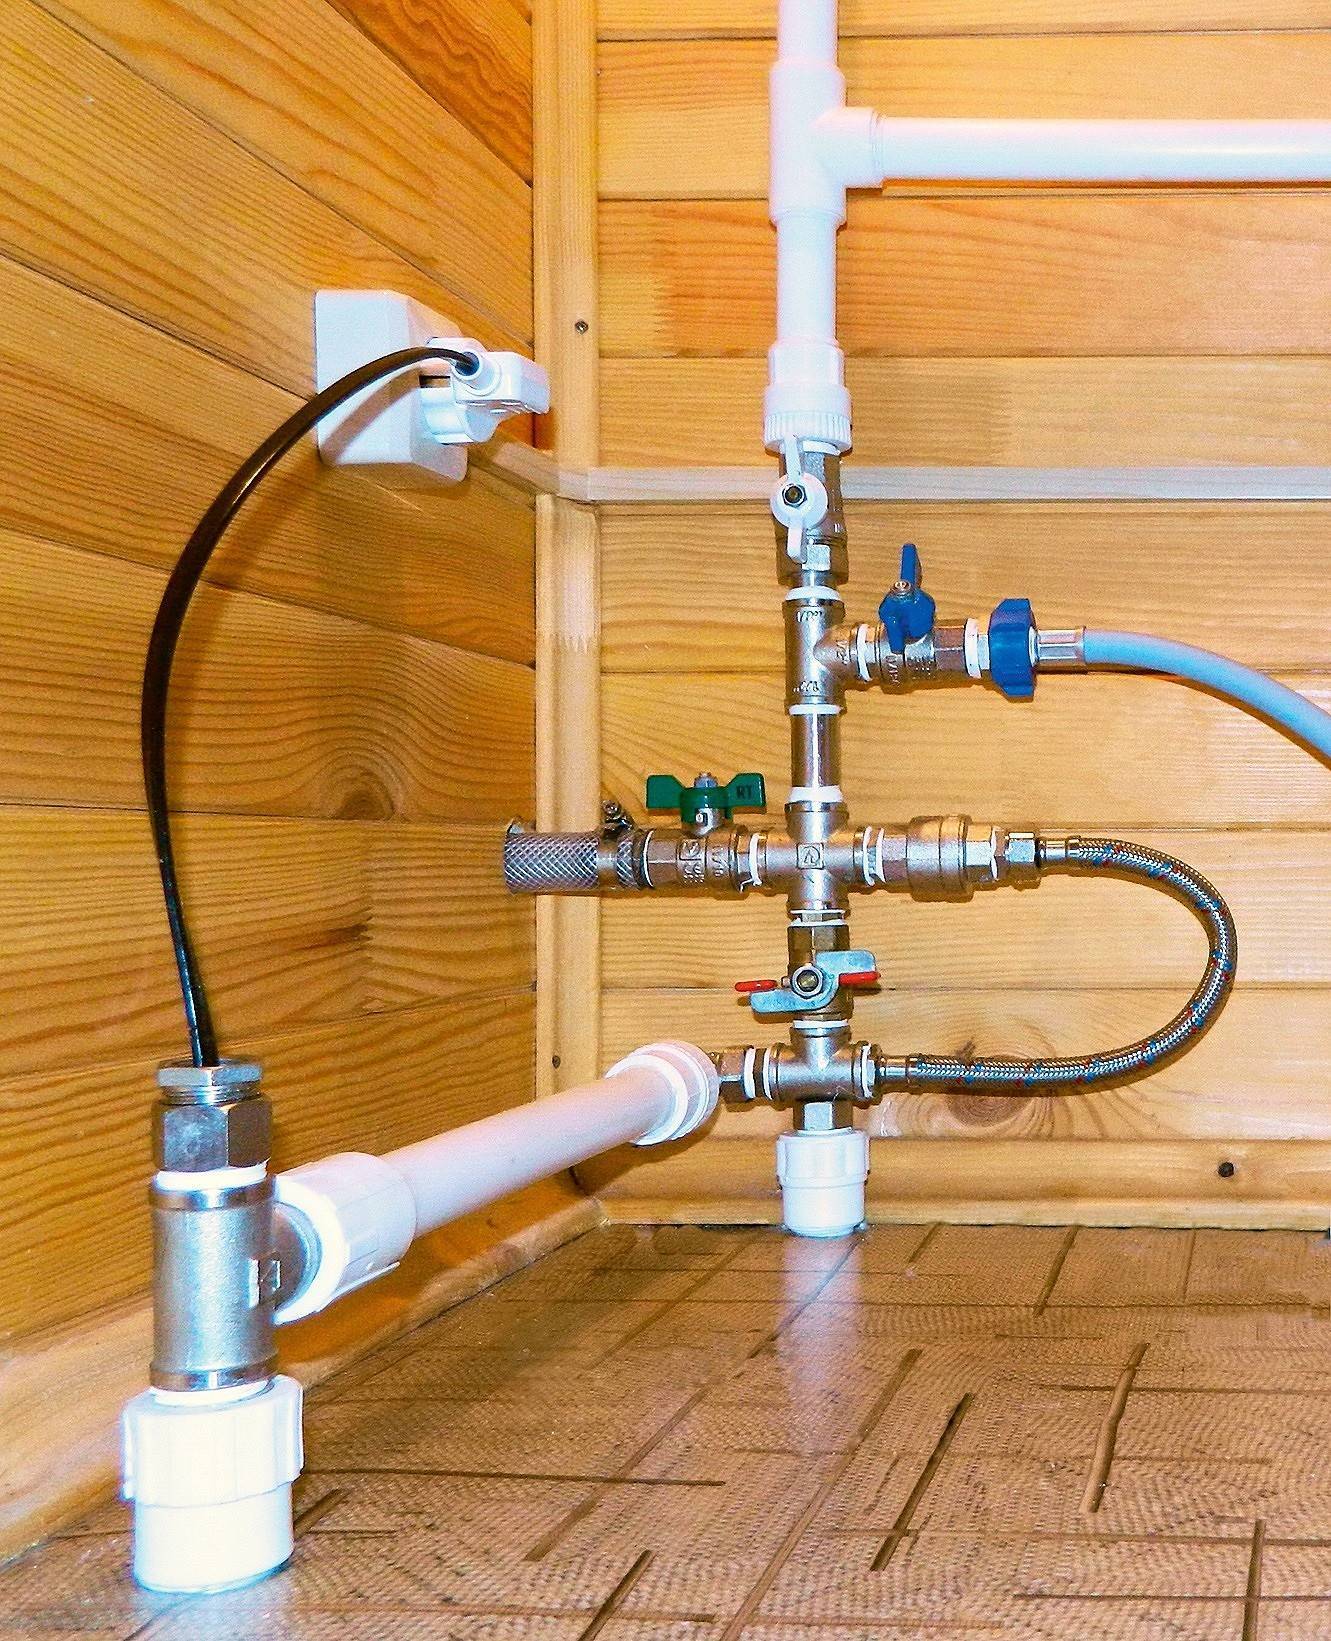 Обогрев водопровода: обзор лучших способов + технические нюансы - все об инженерных системах